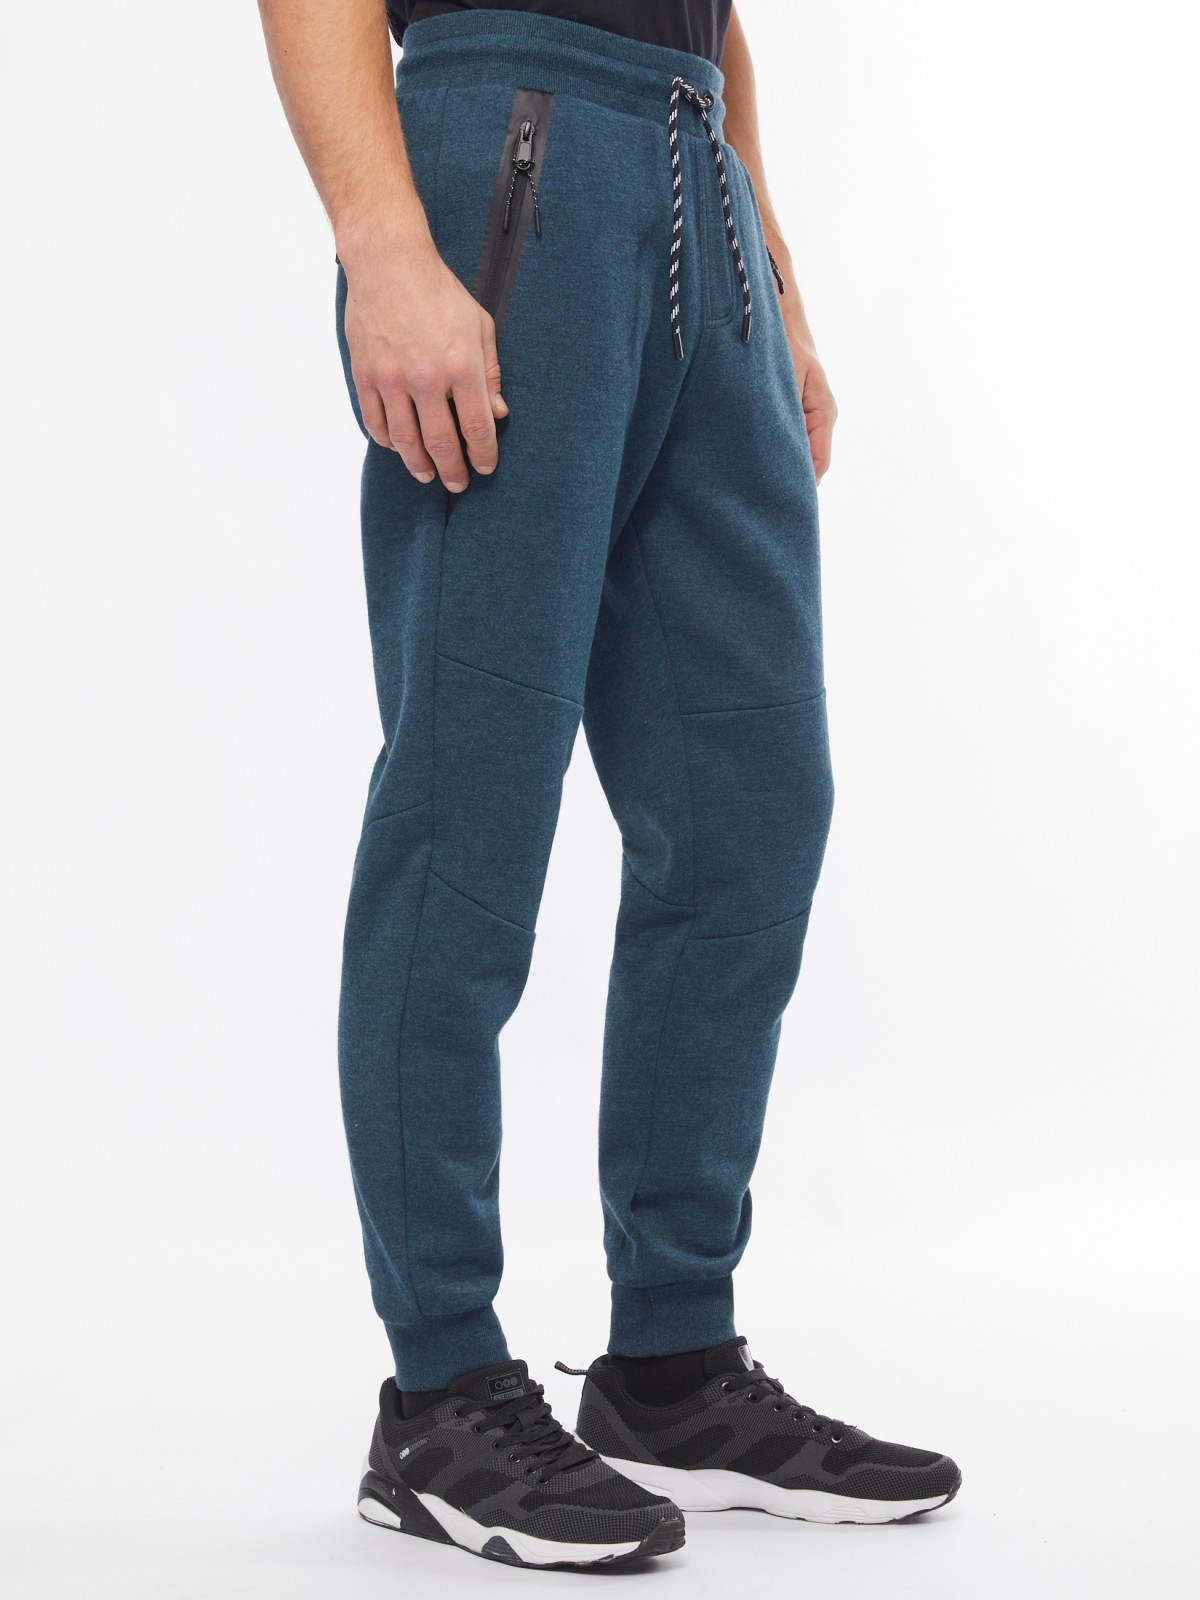 Утеплённые трикотажные брюки-джоггеры в спортивном стиле zolla 014117660063, цвет темно-бирюзовый, размер M - фото 3